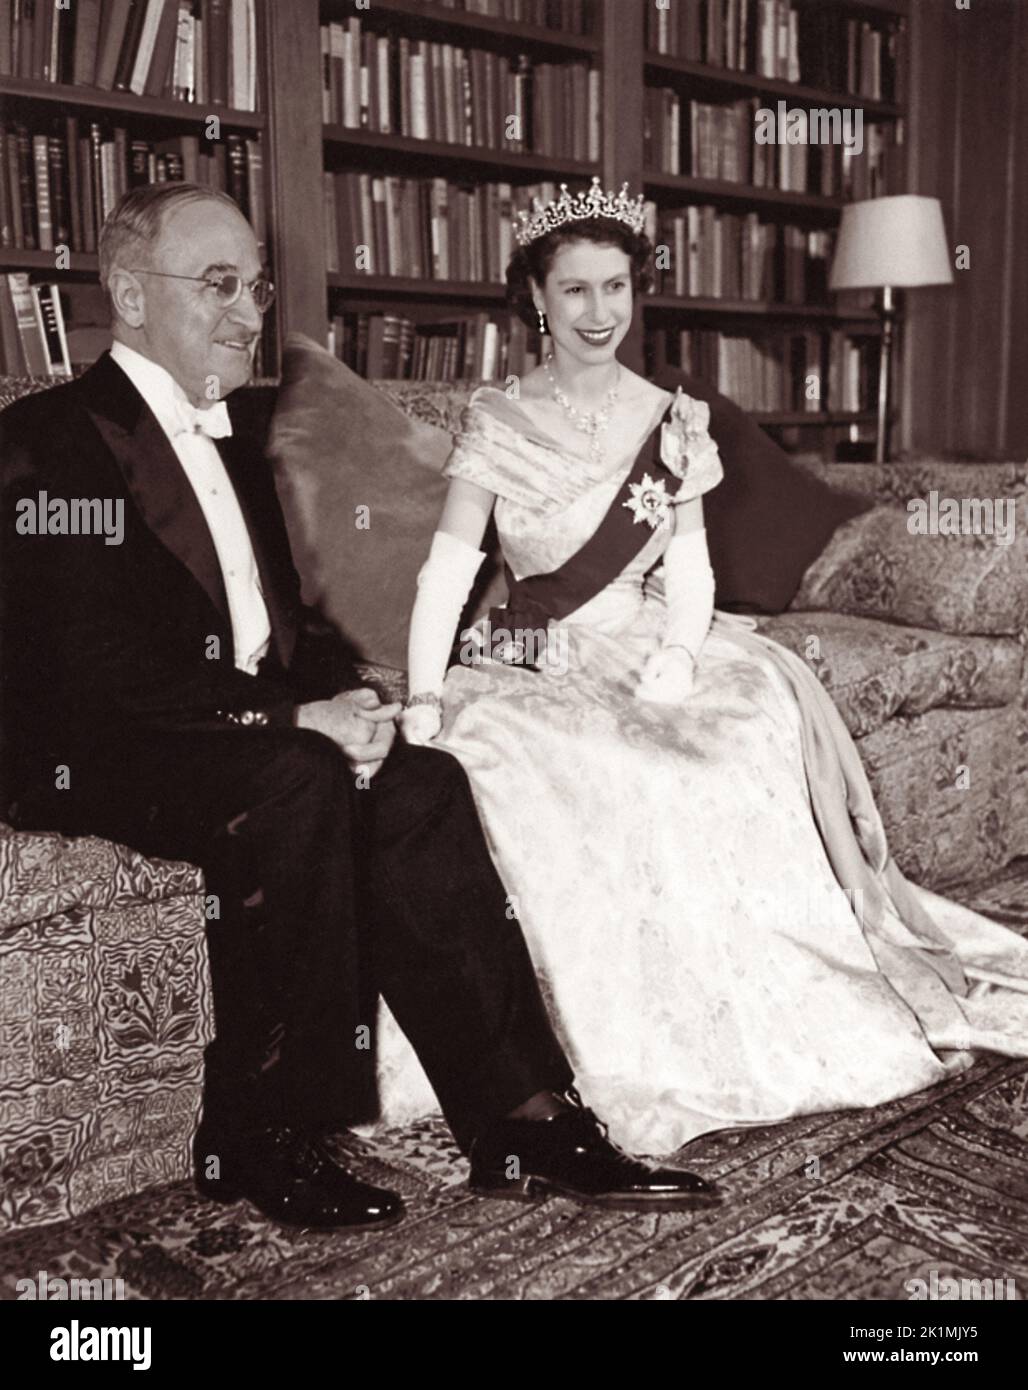 Le président américain Harry S. Truman et la princesse Elizabeth de Grande-Bretagne posent pour une photographie à l'ambassade du Canada à Washington, D.C., sur 1 novembre 1951, lors de la visite de la princesse aux États-Unis. Banque D'Images